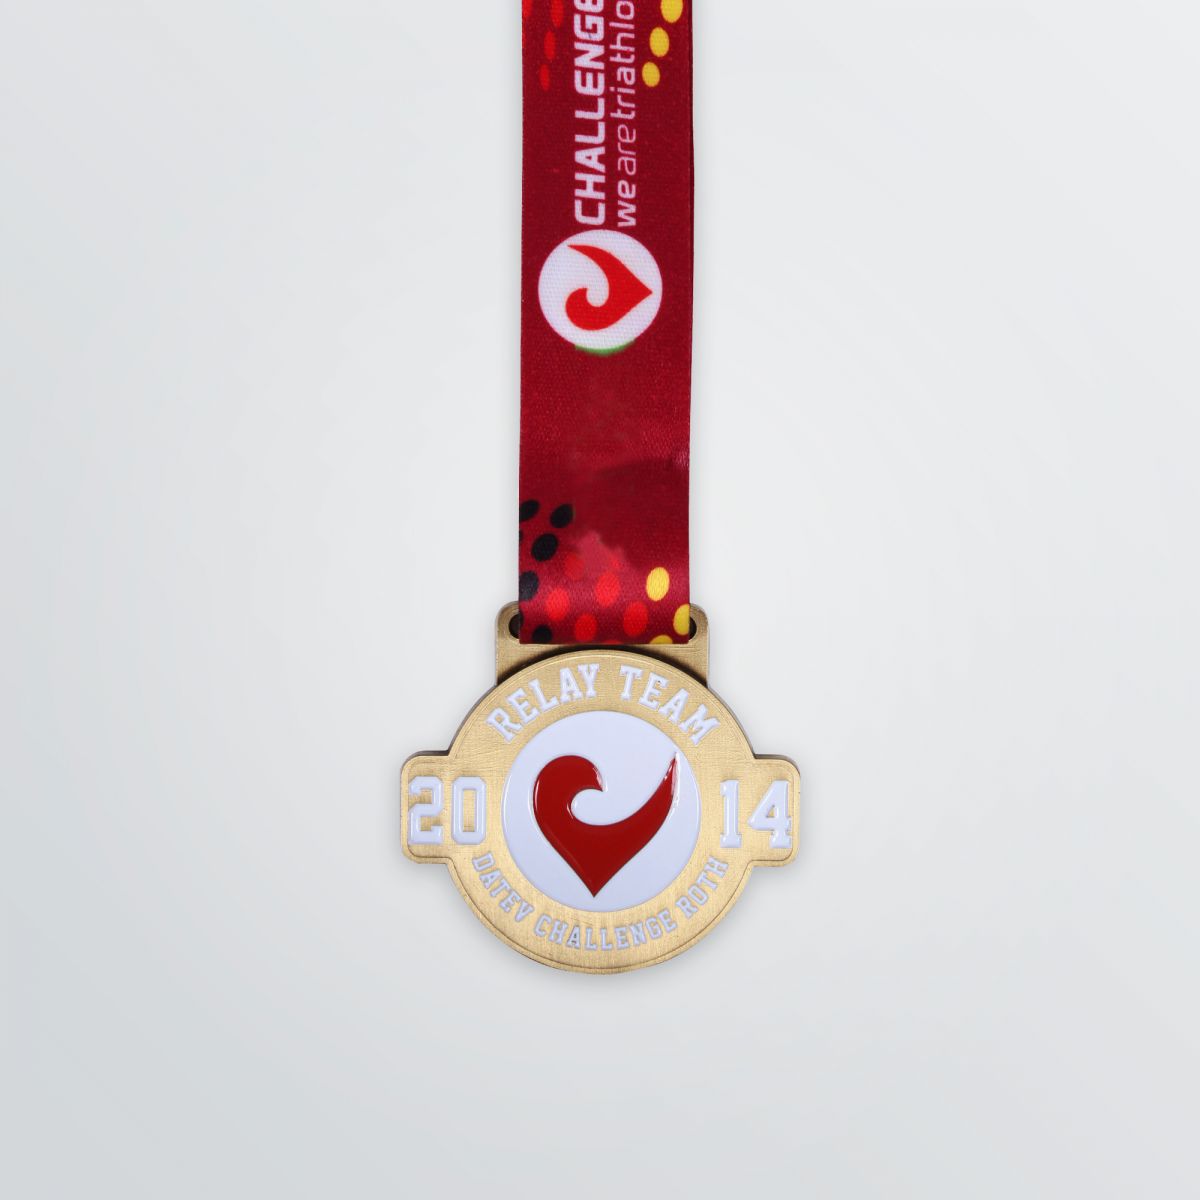 Beispiel Rundfom-Medaille abgebildet mit Logoprägung und rotem Trageband